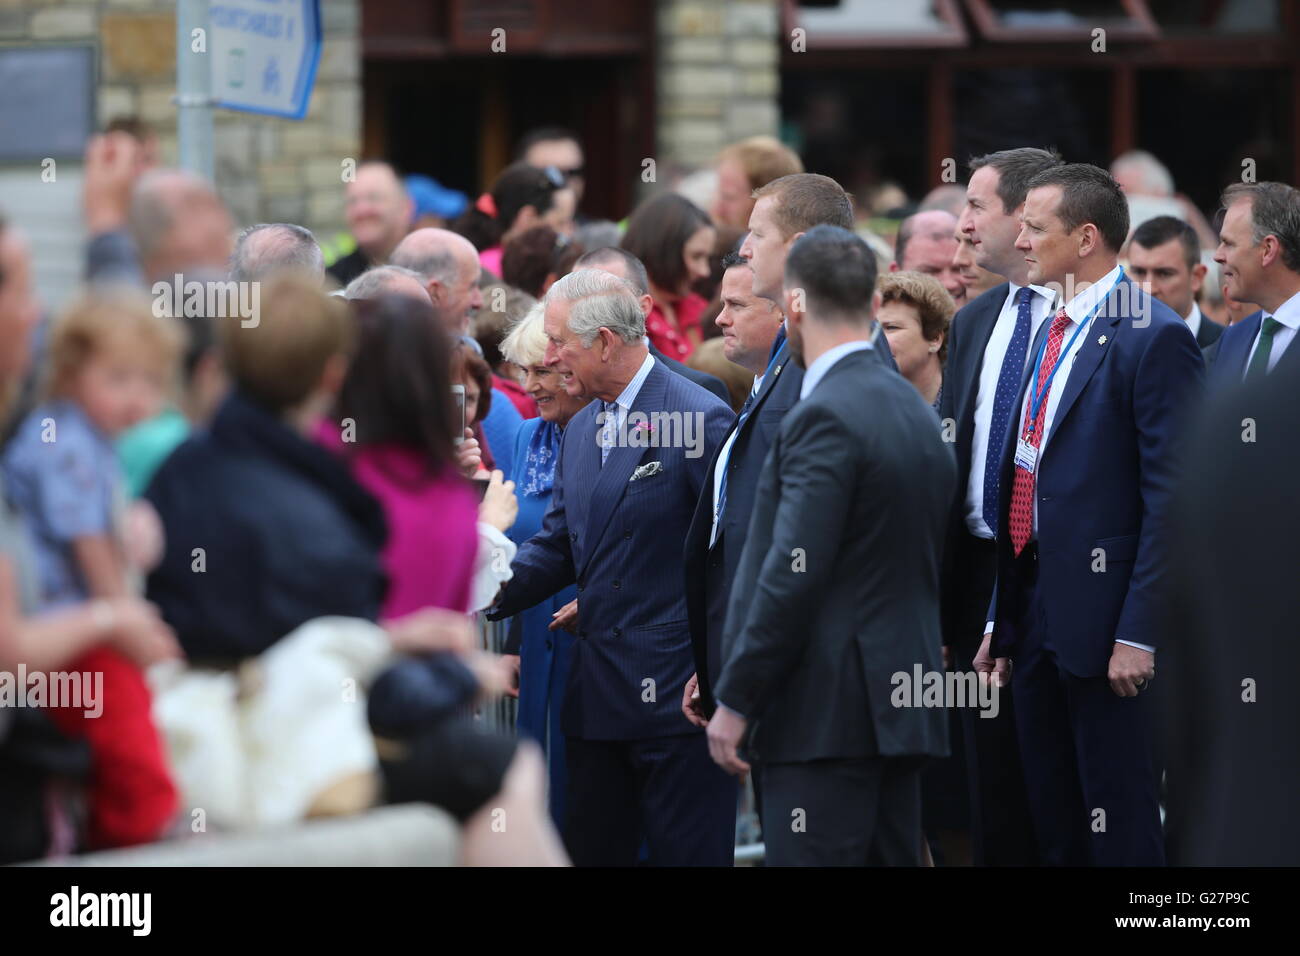 Le Prince de Galles et la duchesse de Cornouailles sont accueillis par sympathisants comme ils visitent la ville de Donegal en République d'Irlande dans la dernière soumission royale pour solidifier les relations anglo-irlandaises transformées. Banque D'Images